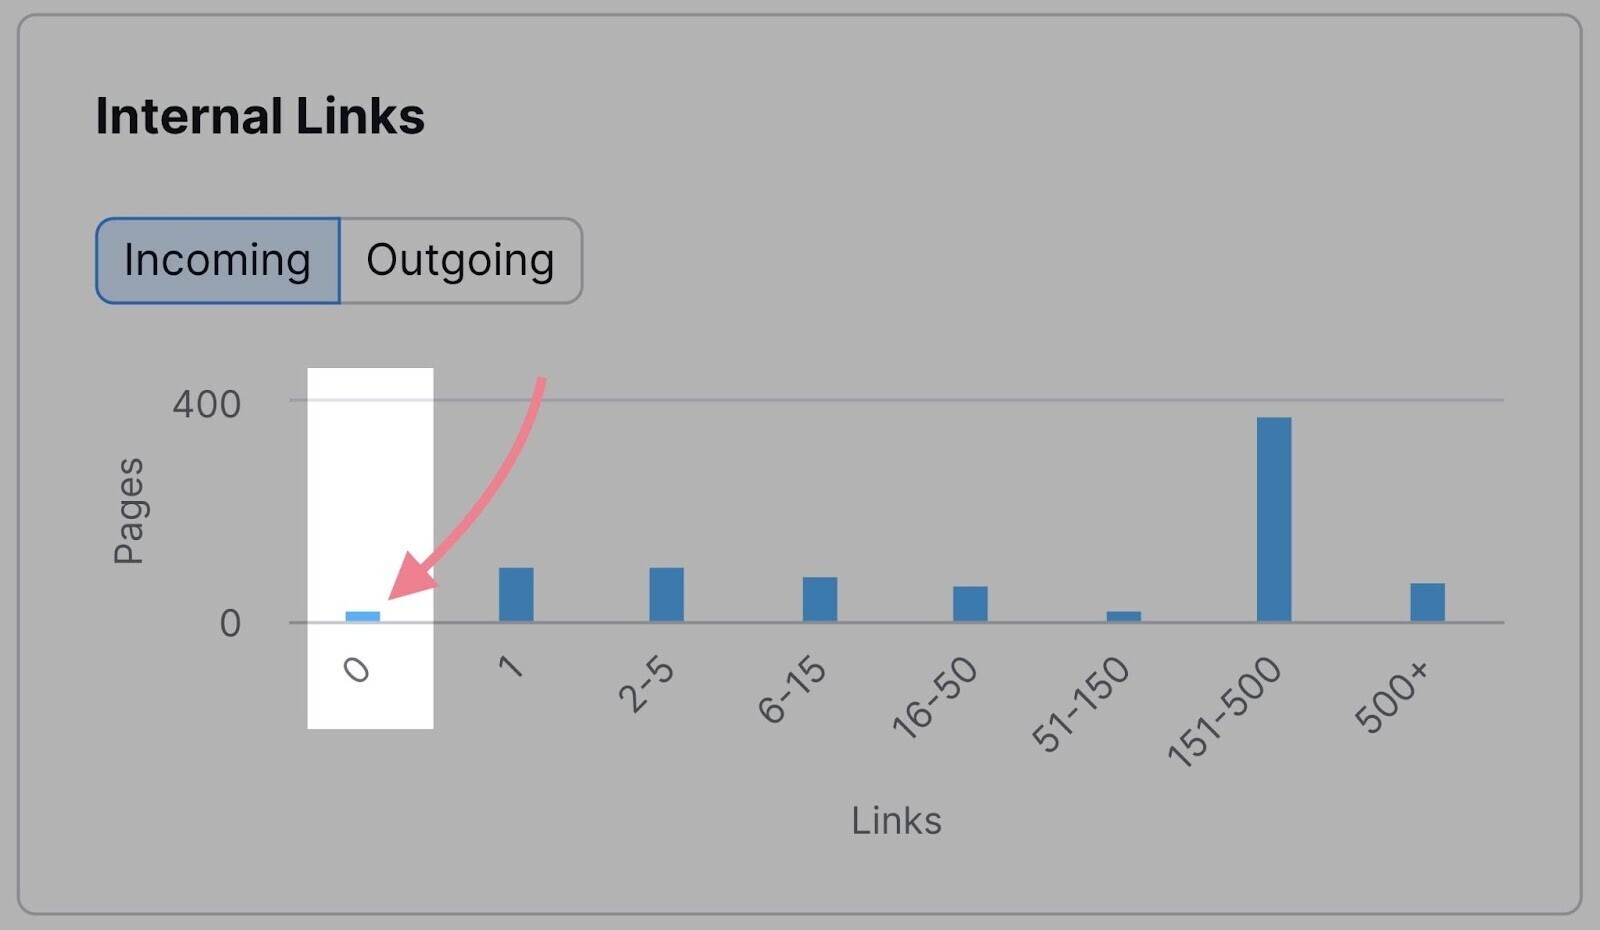 Internal Links bar graph